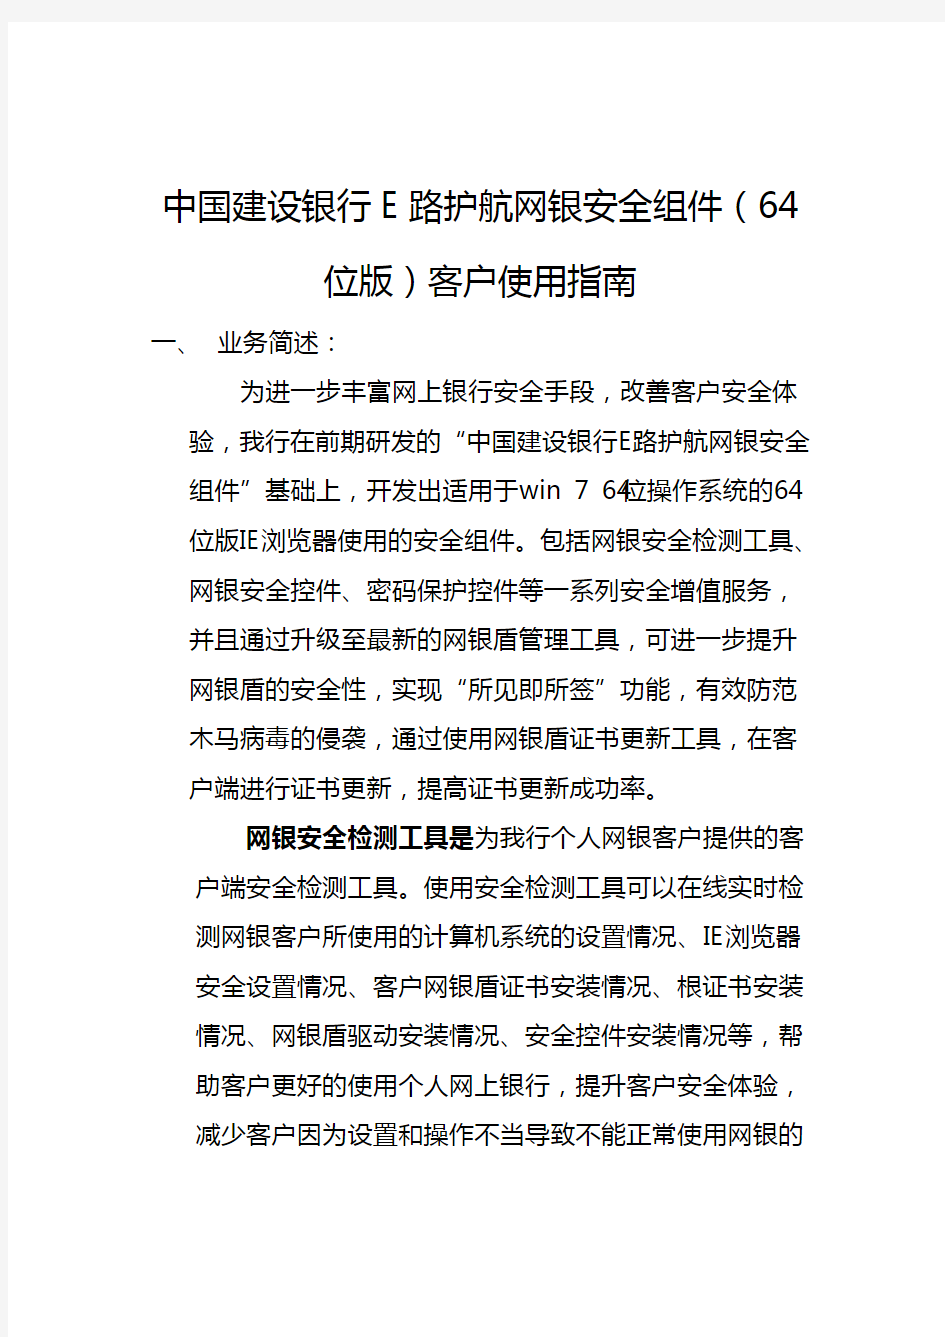 中国建设银行E路护航网银安全组件(64位版)客户使用指南